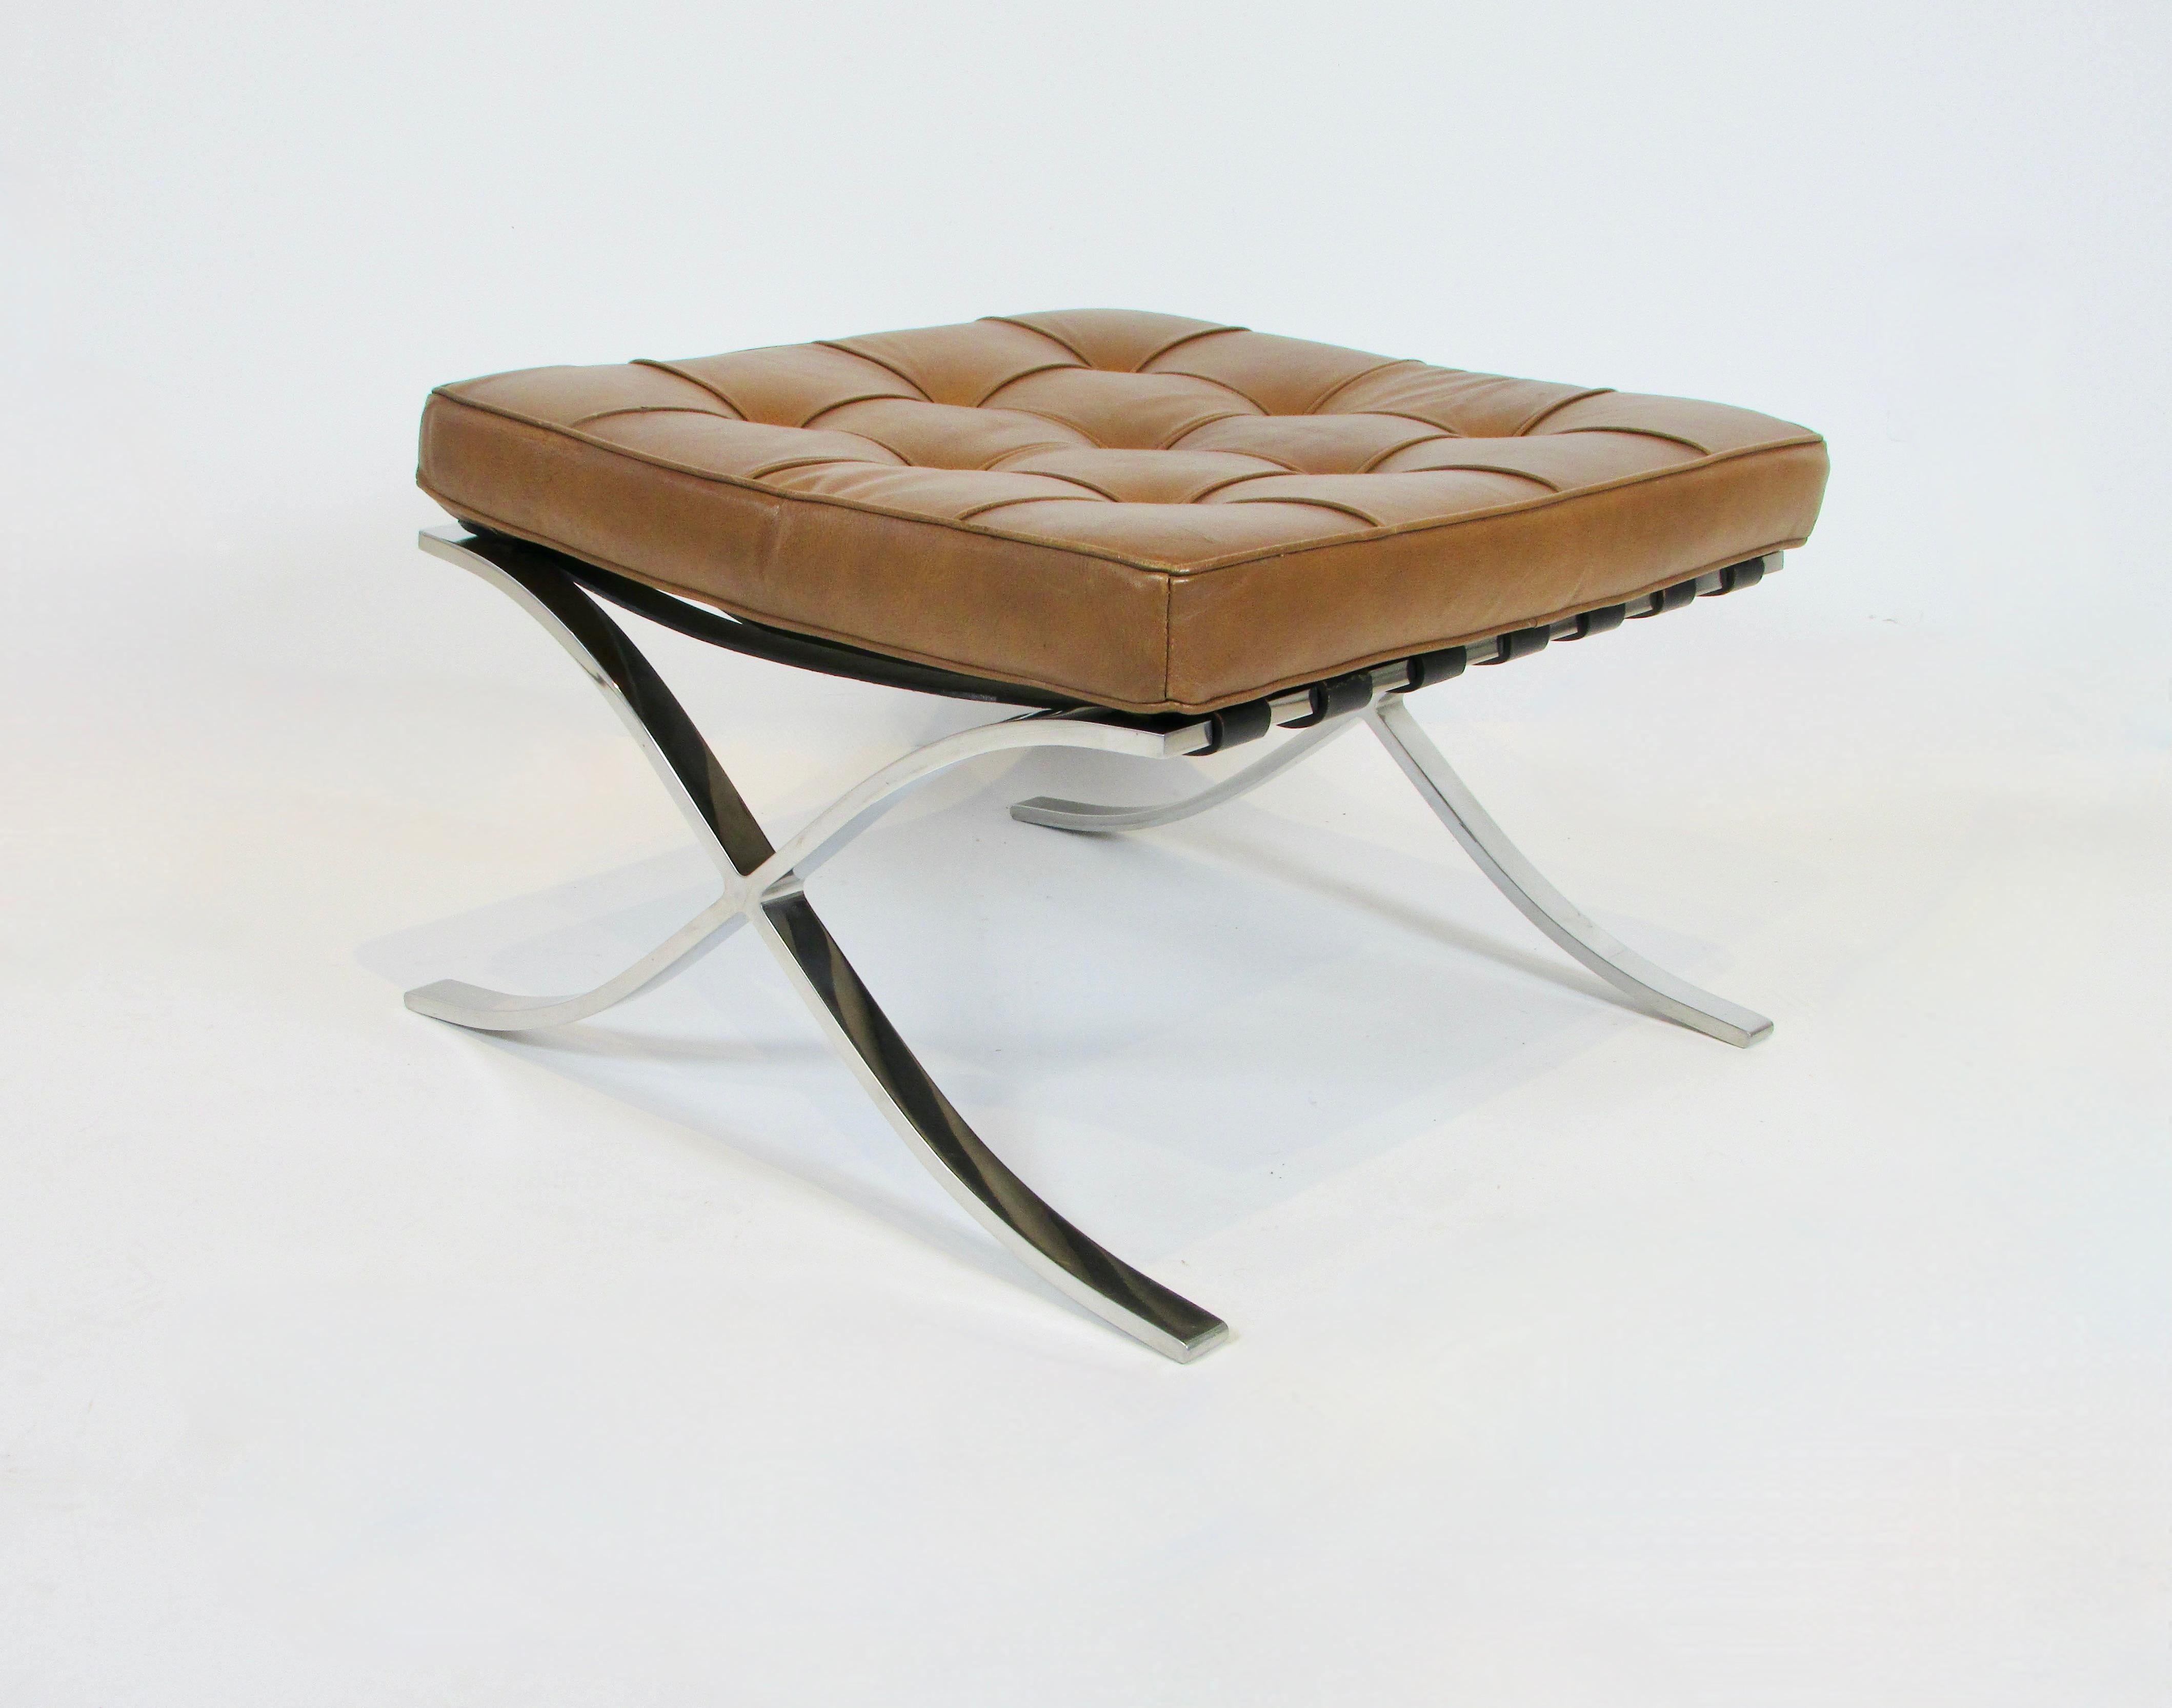 Der Barcelona-Stuhl und der dazugehörige Hocker wurden von Ludwig Mies van der Rohe und Lilly Reich für den deutschen Pavillon auf der Weltausstellung 1929 in Barcelona, Katalonien, entworfen.
Obwohl viele Architekten und Möbeldesigner der